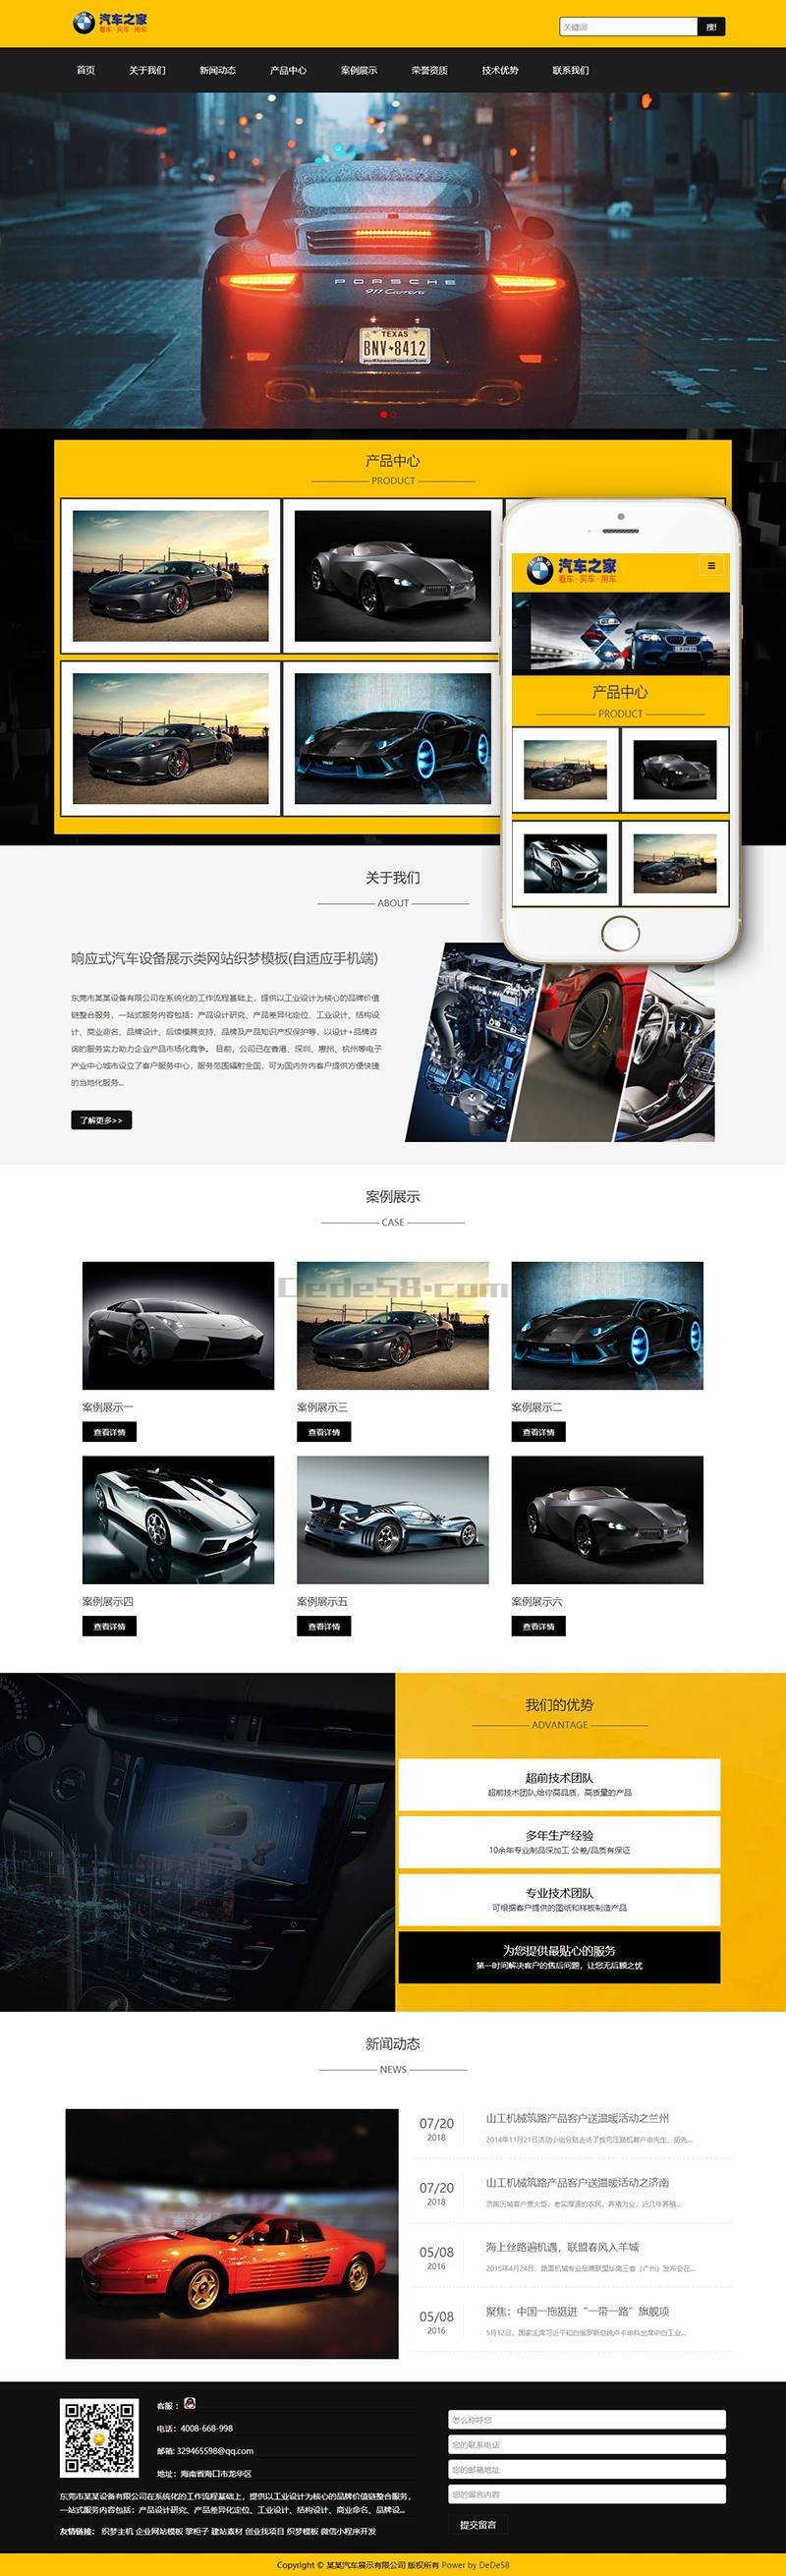 响应式汽车设备展示类网站织梦模板(自适应手机端) 第2张